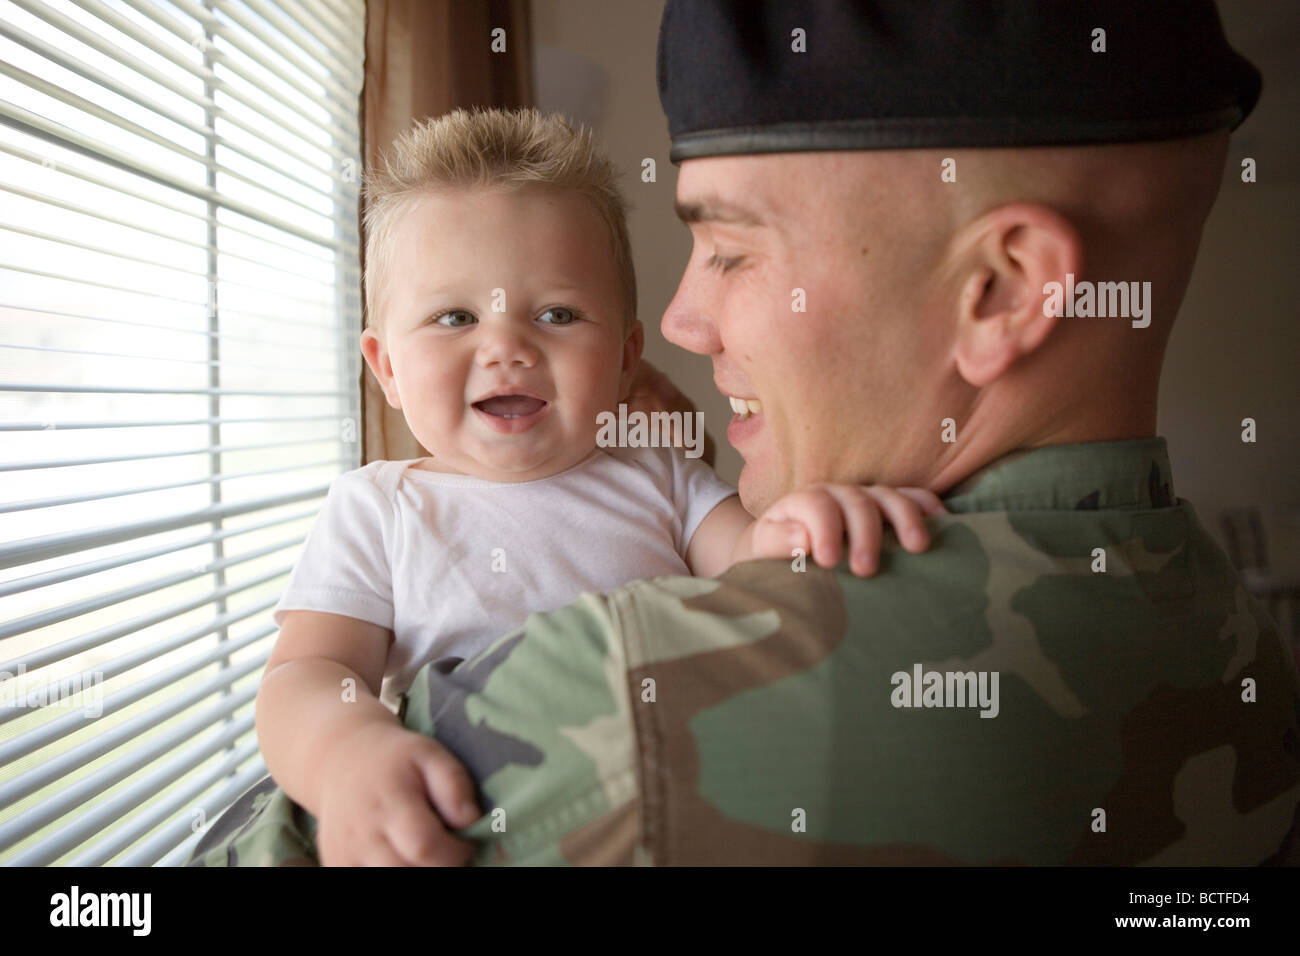 amerikanischen Militärs Vater nach Hause zu kommen und seinen kleinen Sohn mit einer Umarmung begrüßt Stockfoto